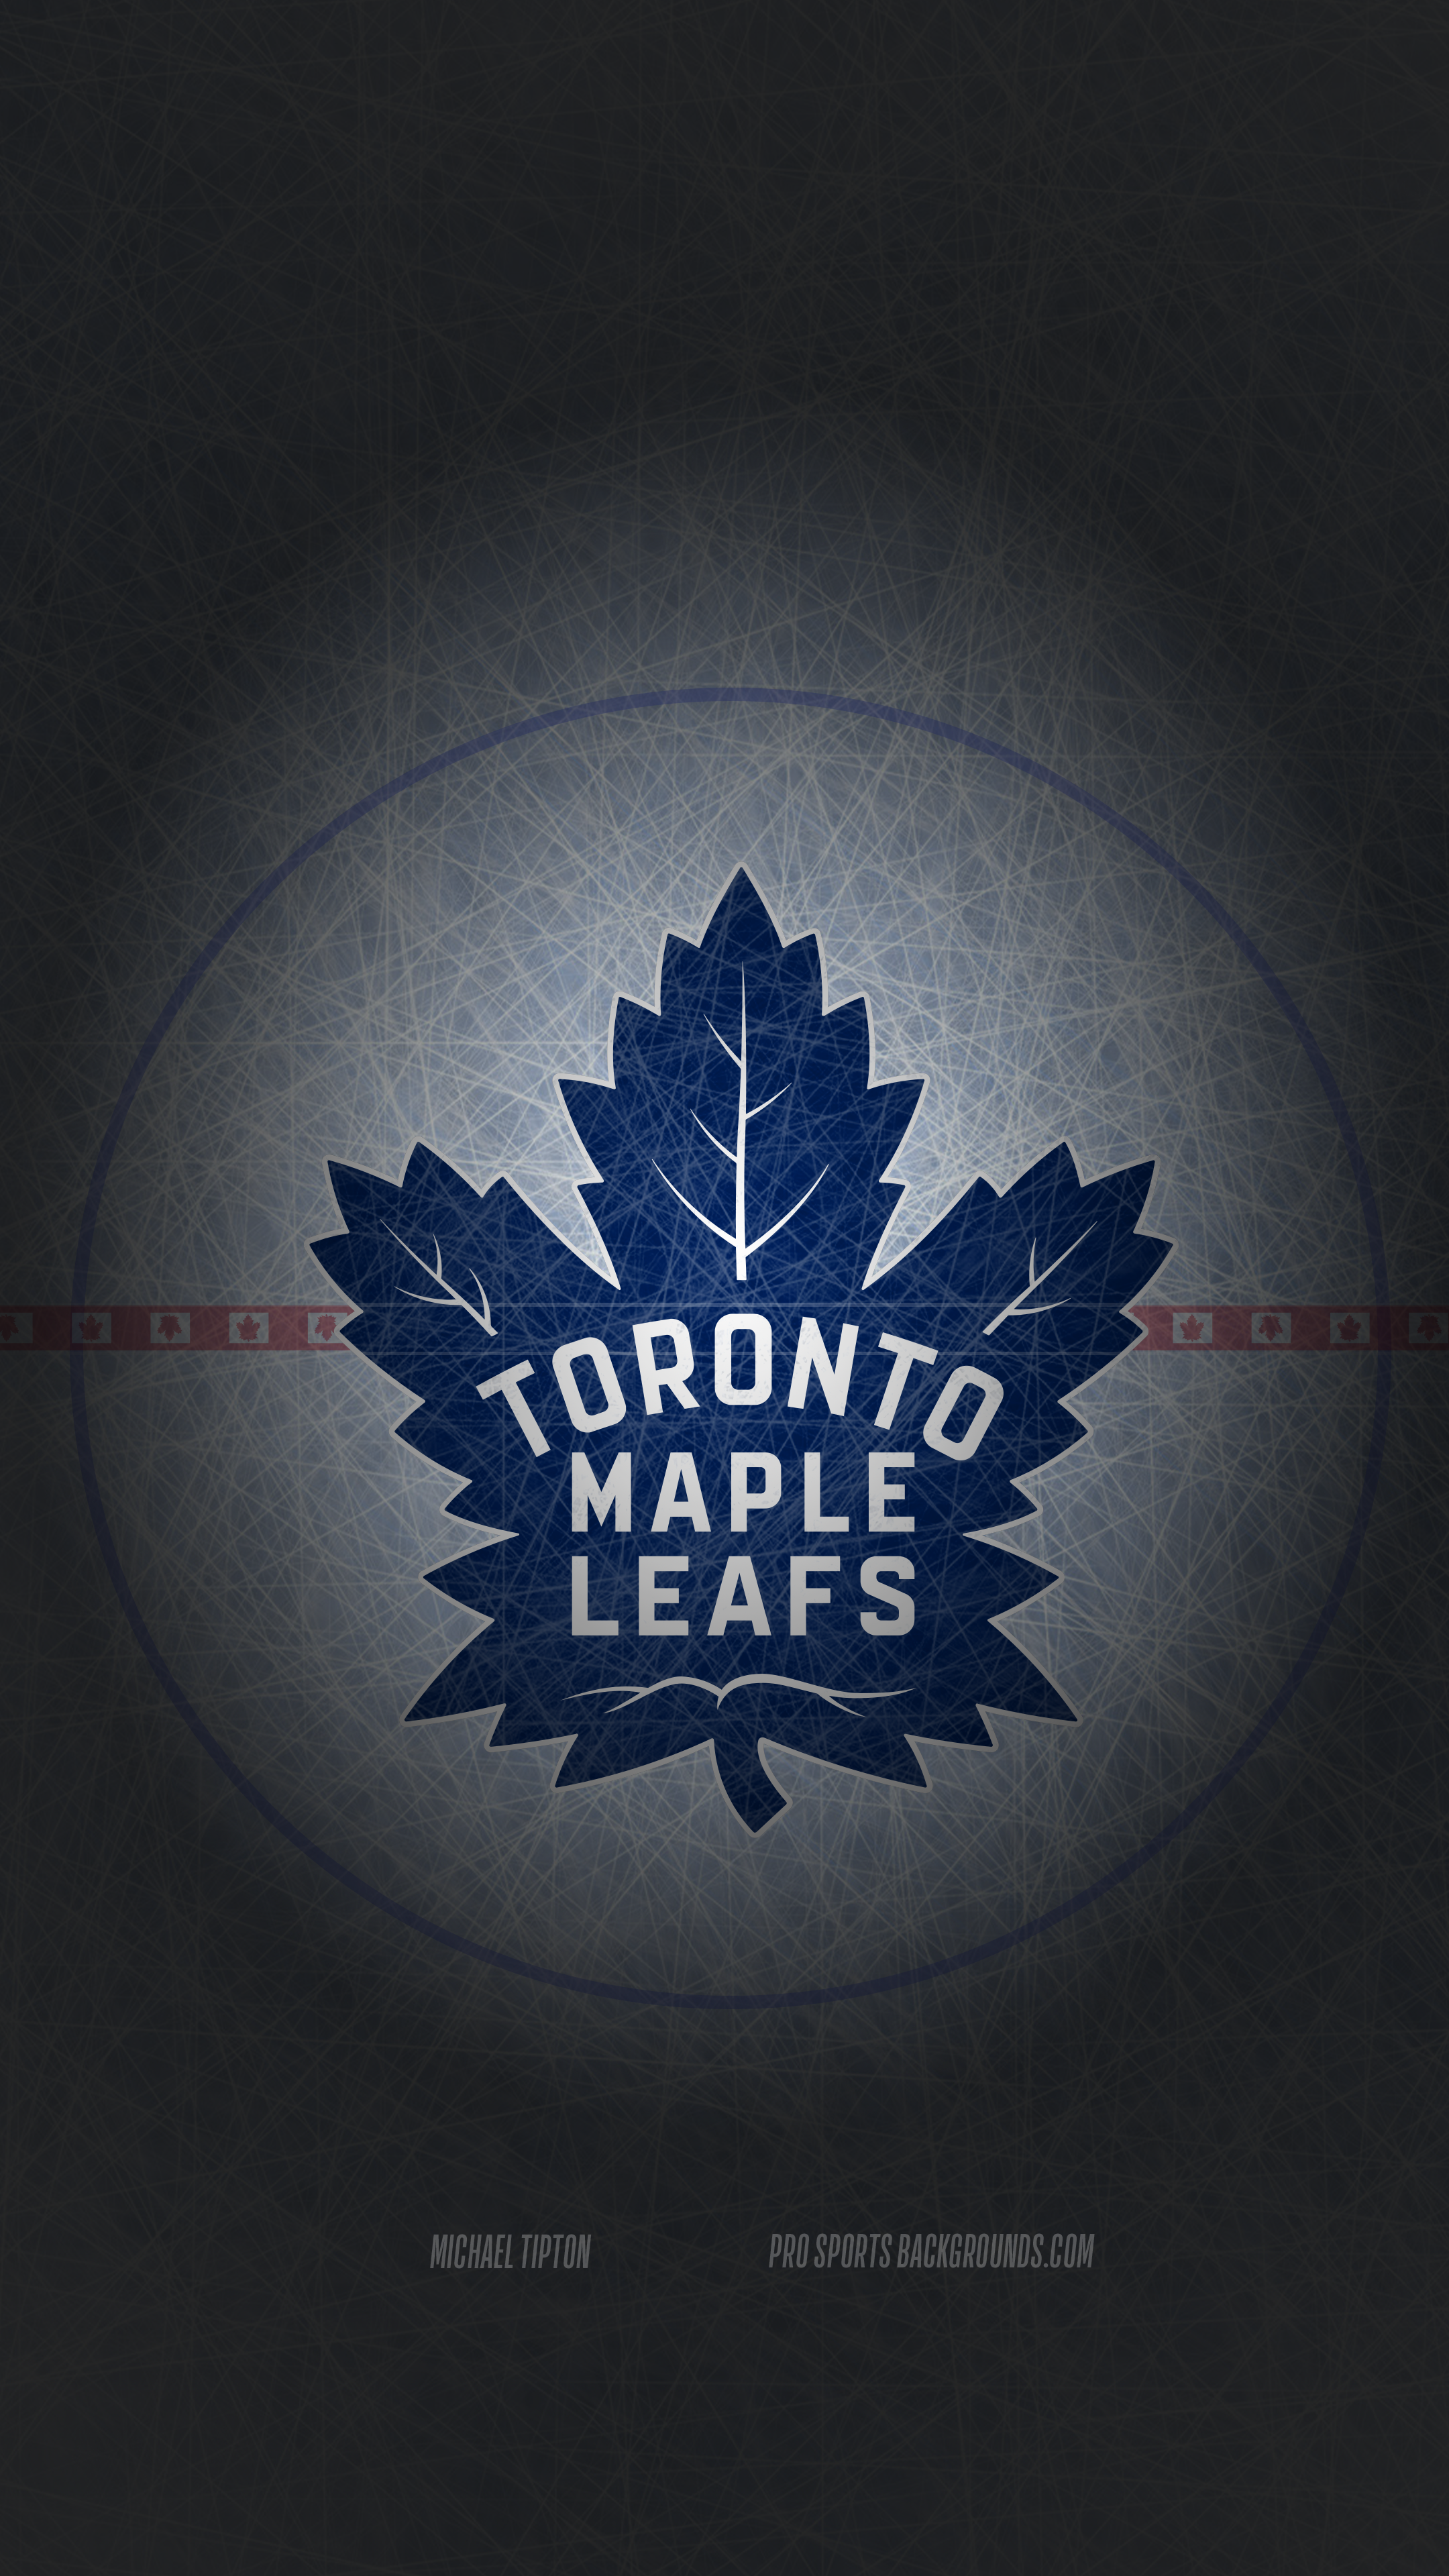 Toronto maple leafs HD wallpapers | Pxfuel